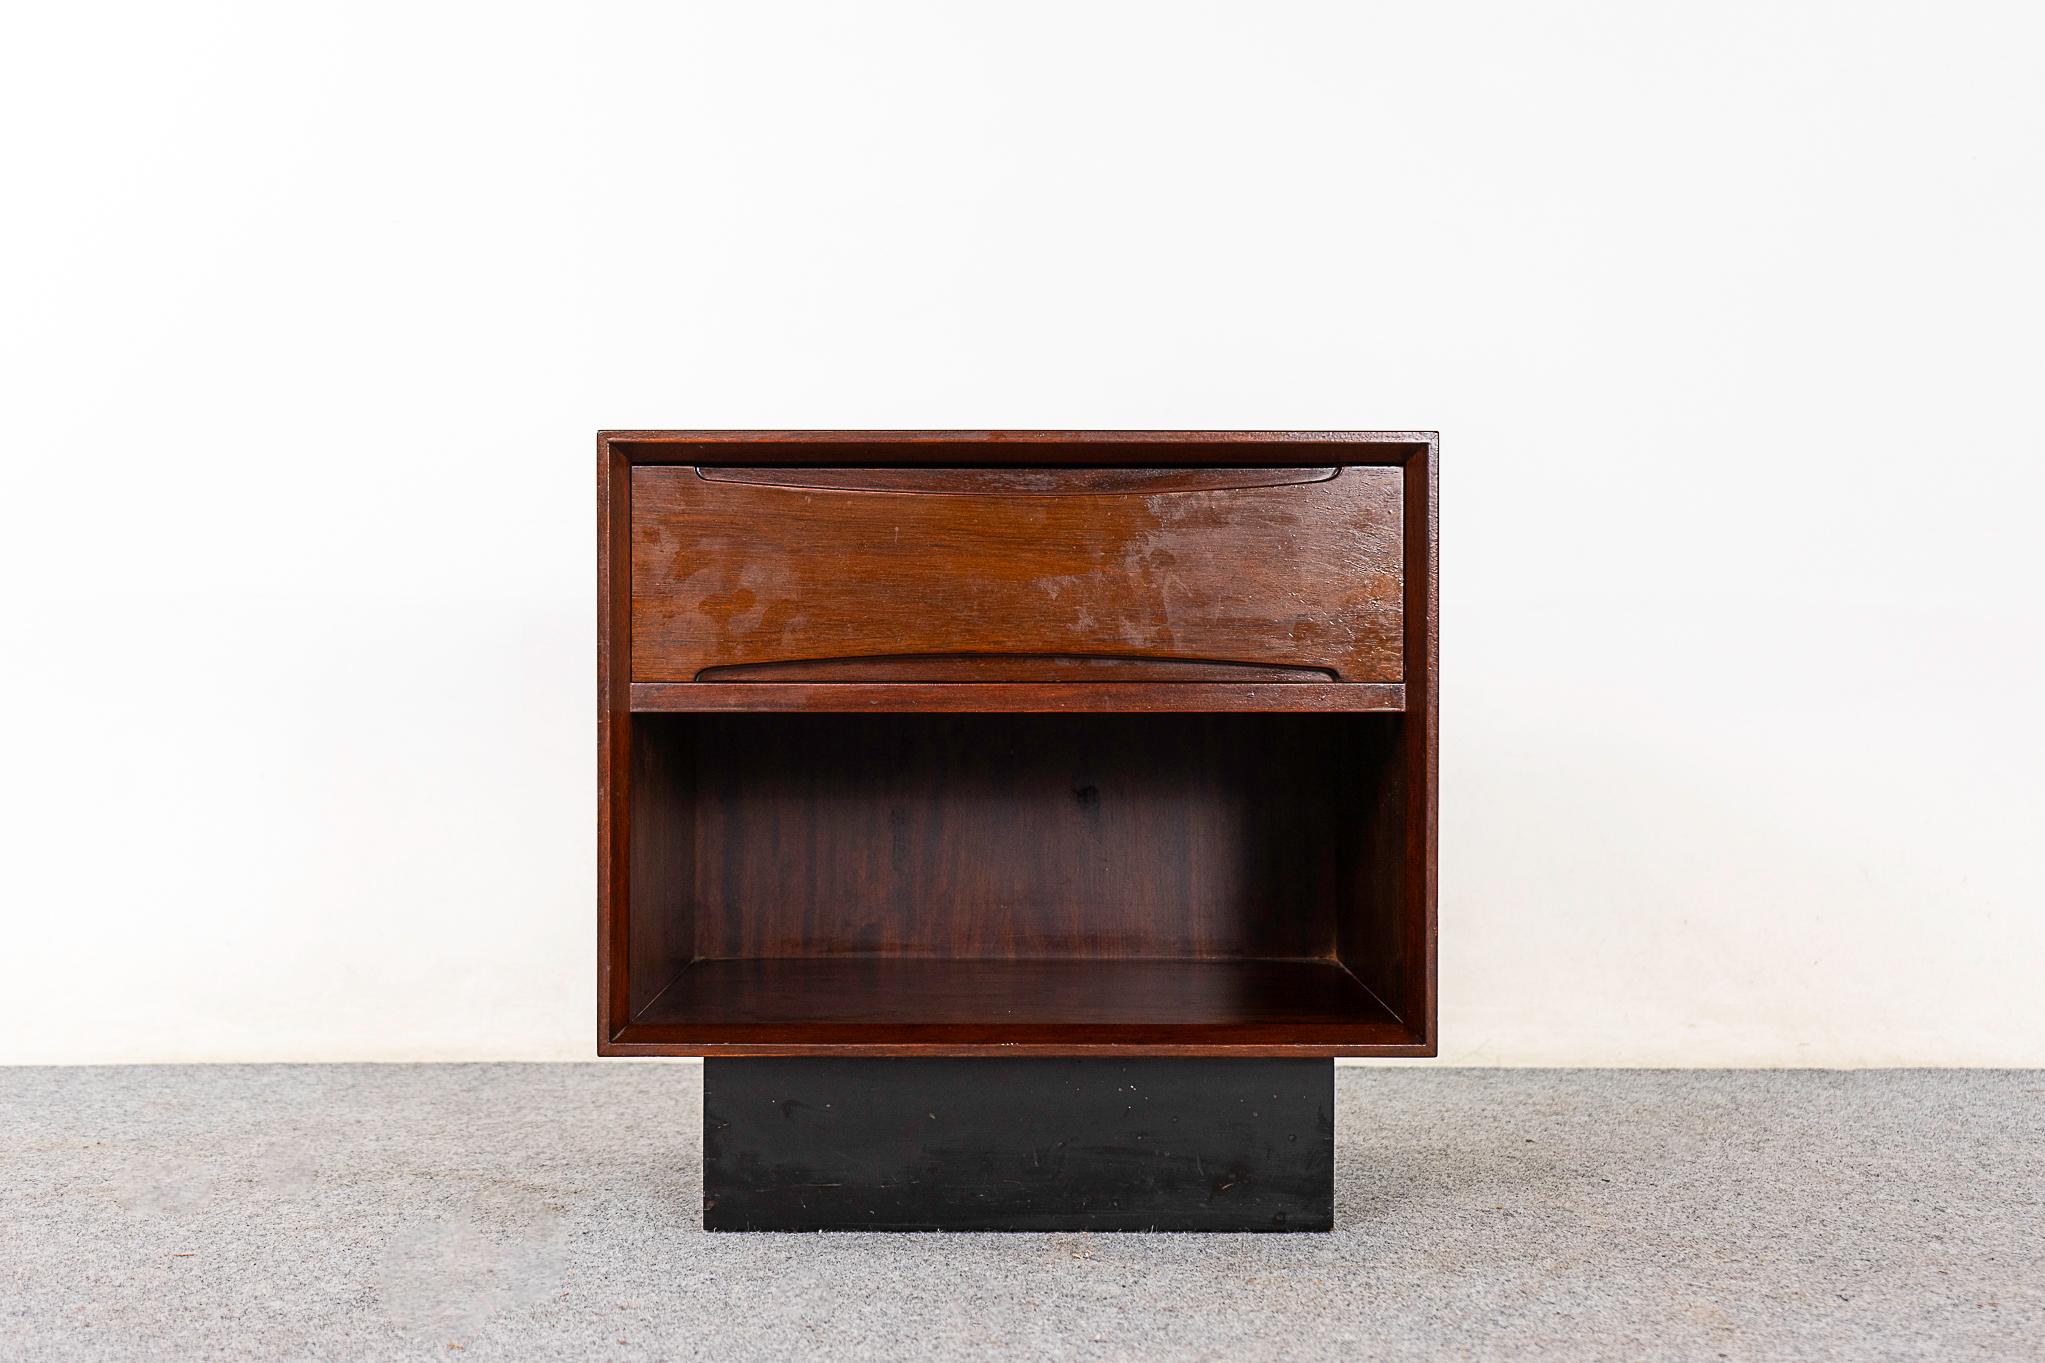 Table de chevet en bois de rose par Drylund, vers les années 1960. Taille compacte avec un tiroir à queue d'aronde et un espace de rangement ouvert.

Pièce non restaurée avec option d'achat en condition restaurée pour un supplément de 100 USD. La